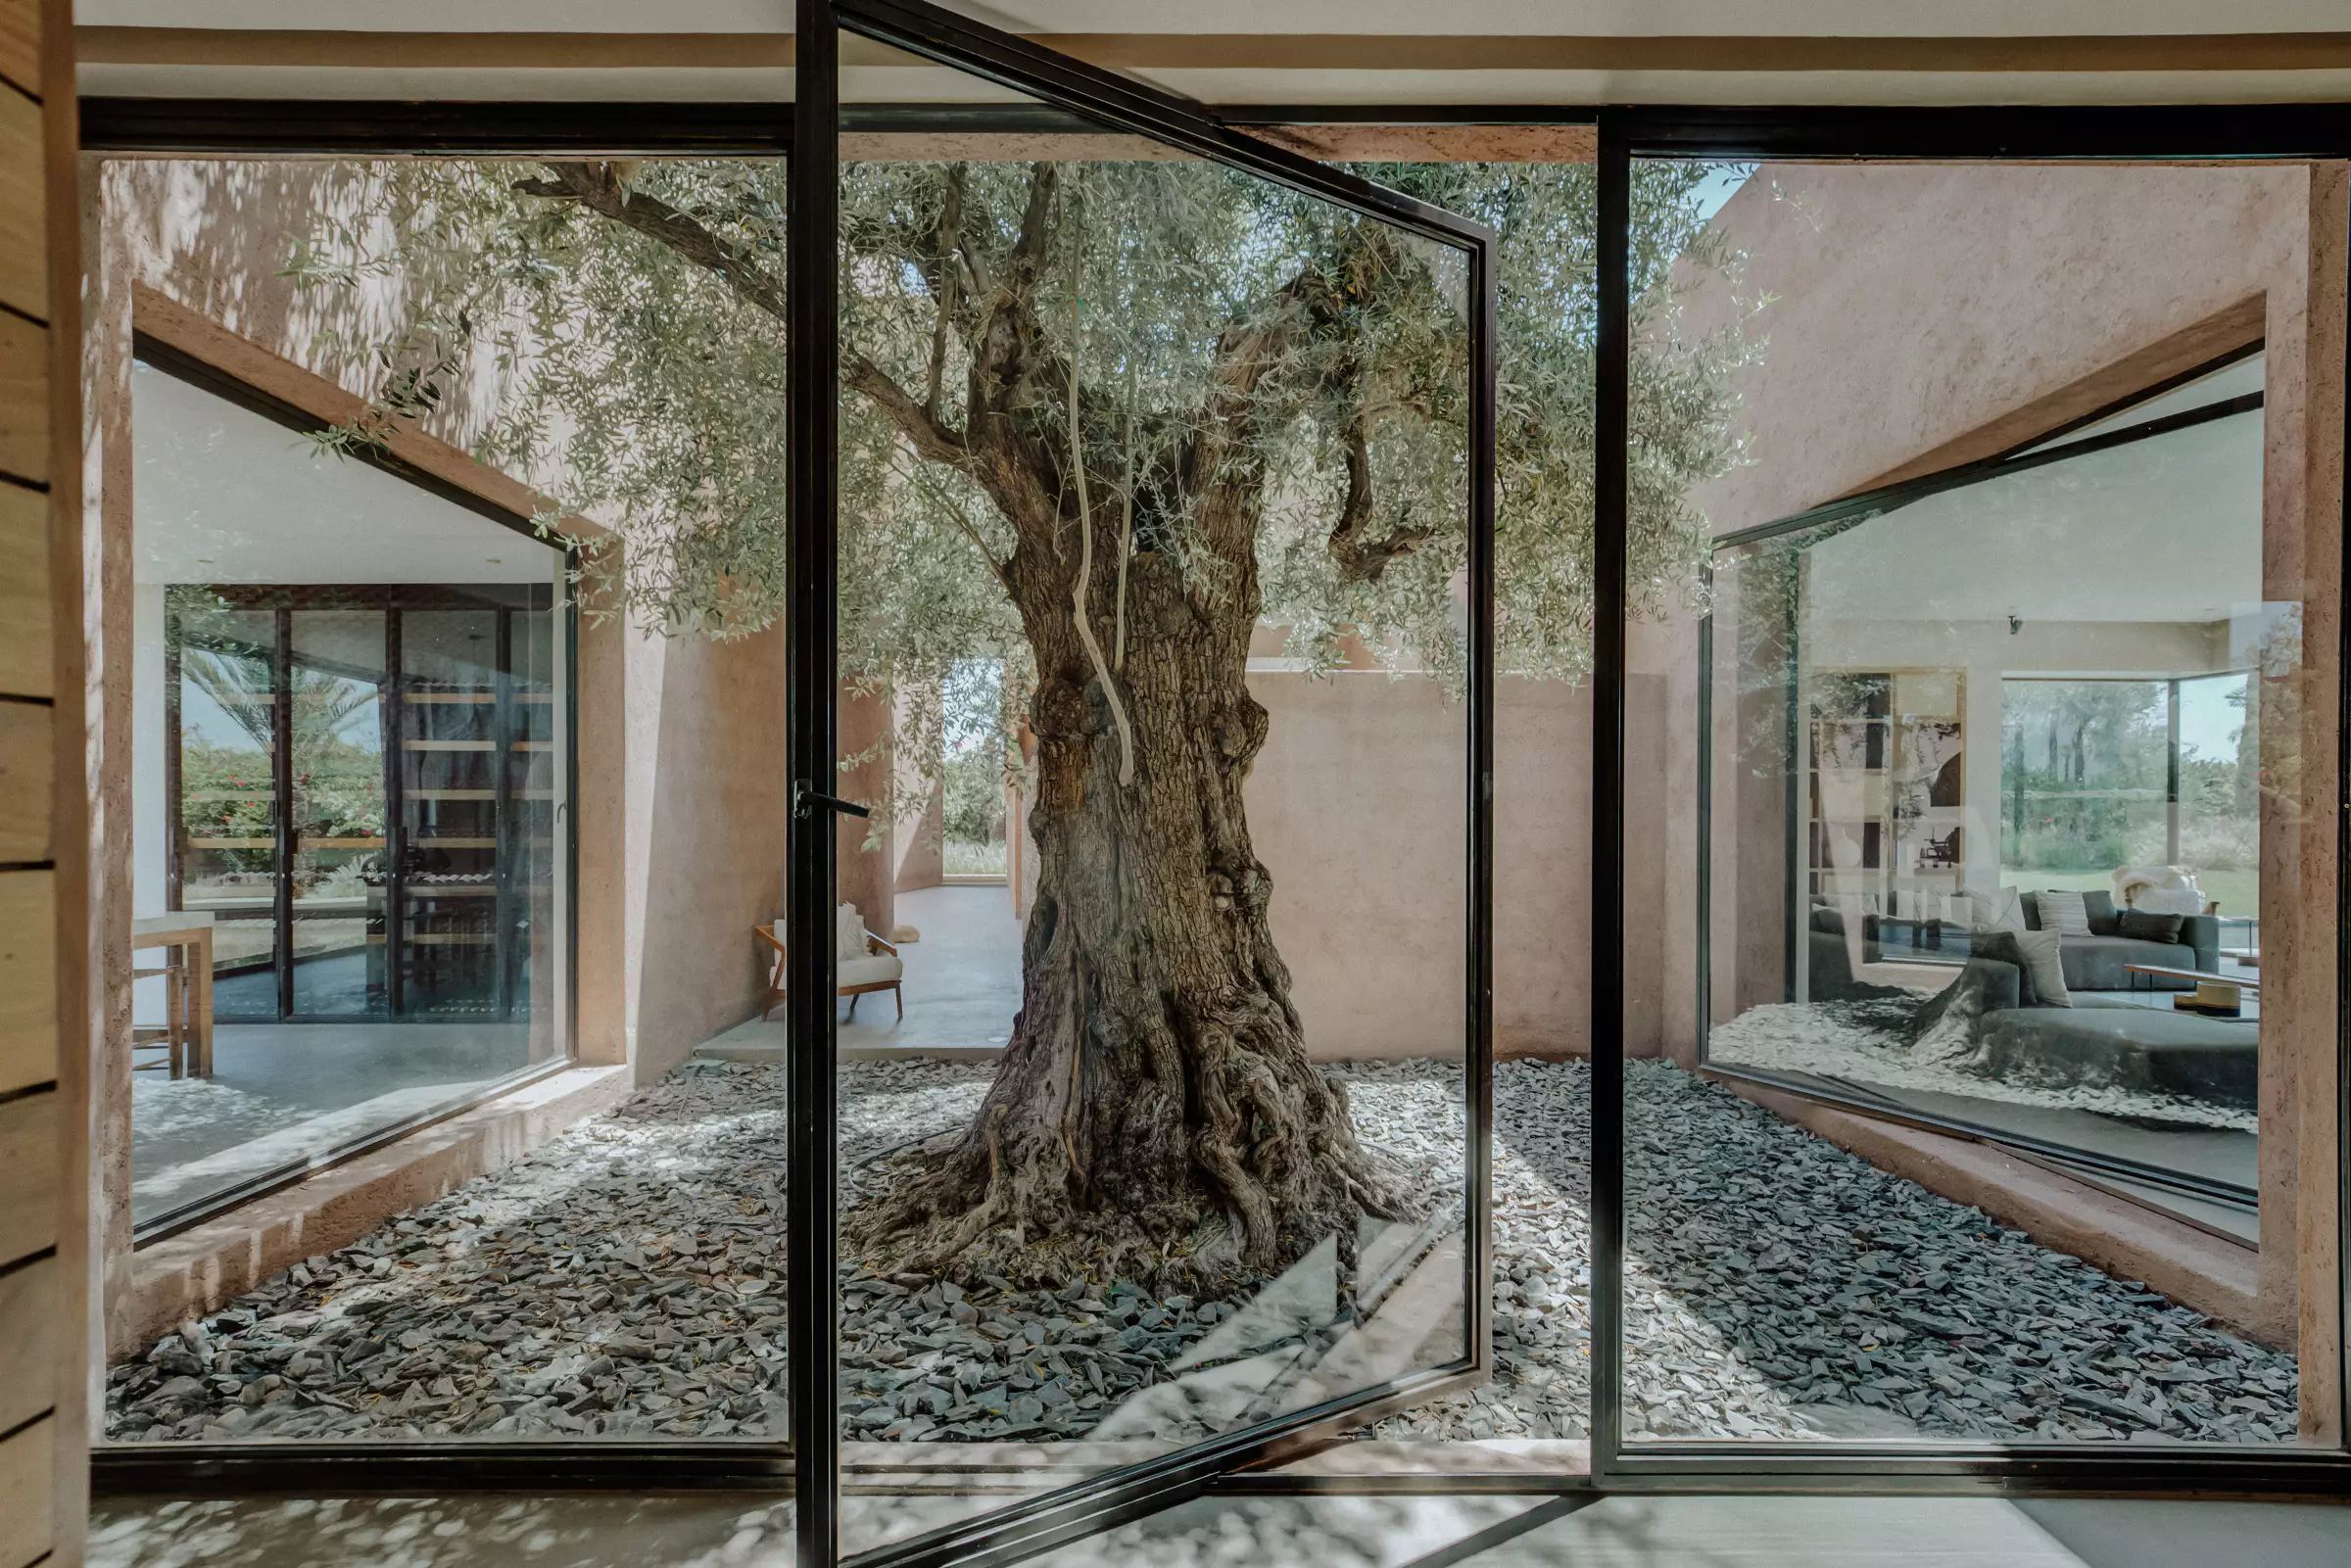 patio avec olivier centenaire